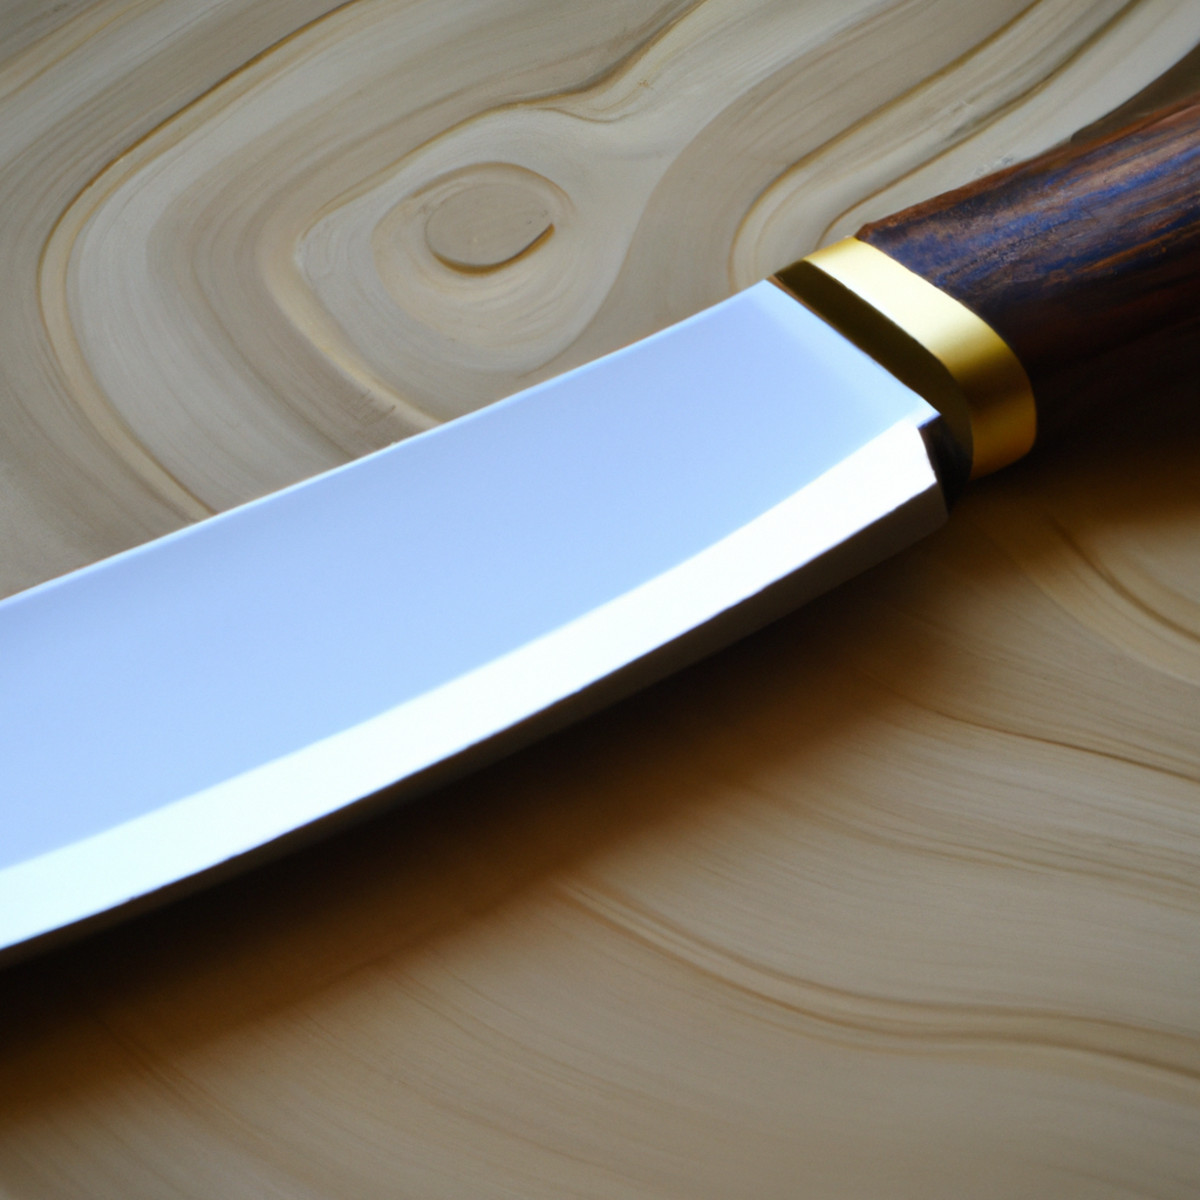 Finition du couteau Migaki - finement polie pour une sophistication lisse